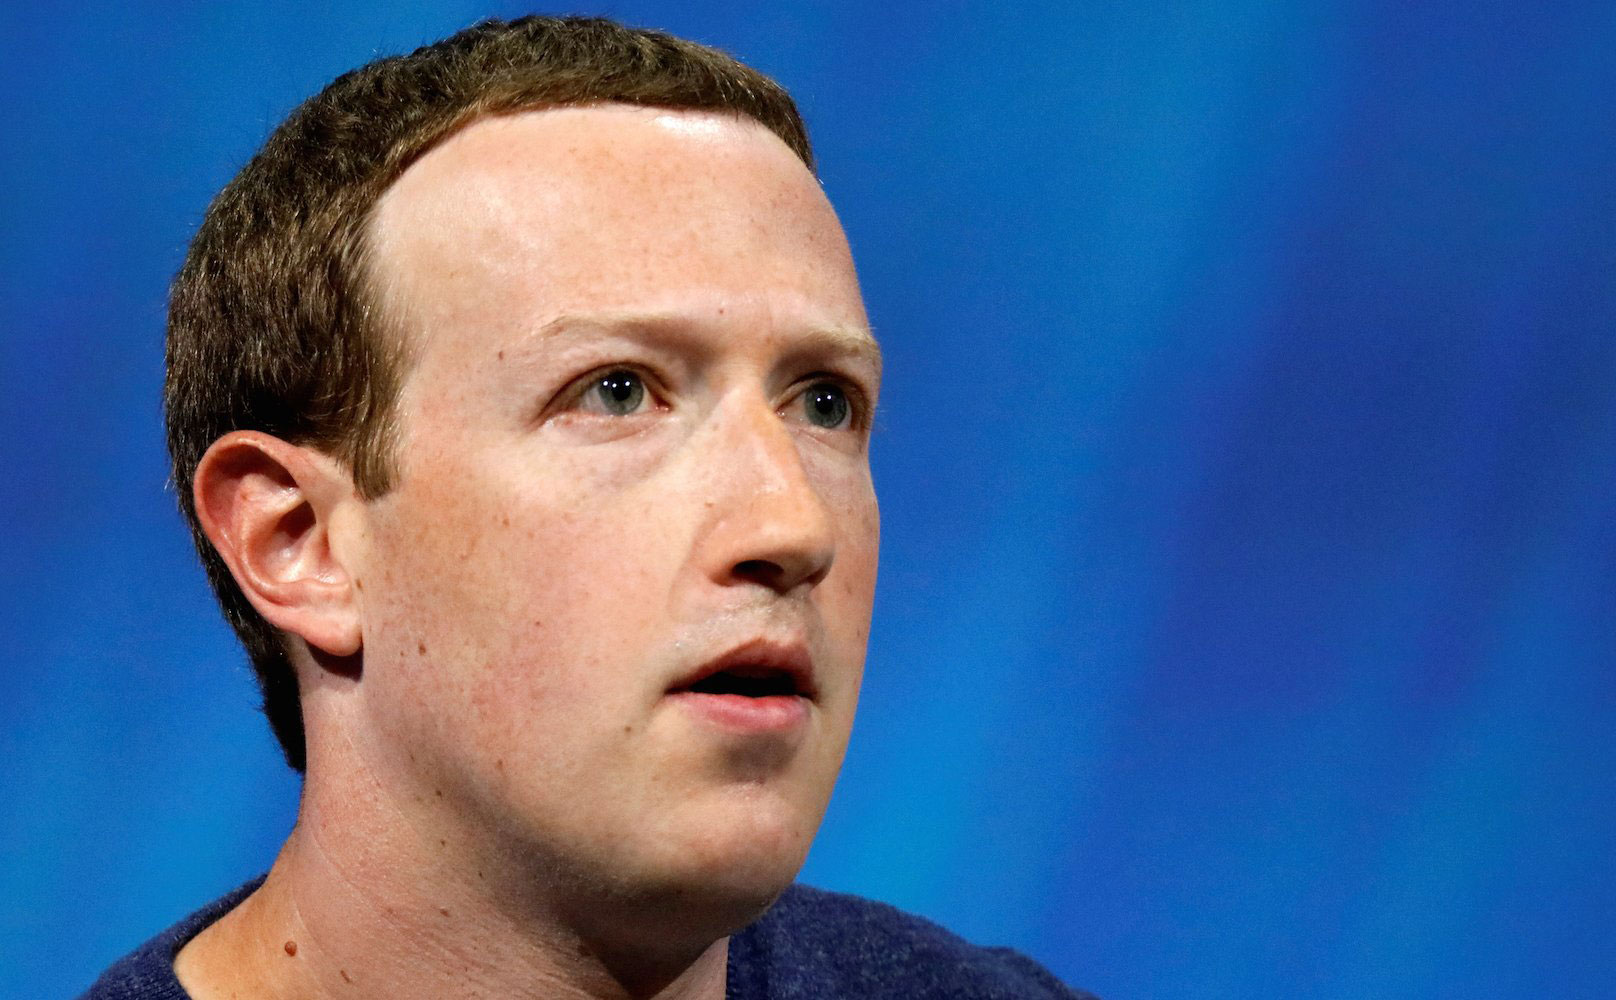 Facebook Q2/2018: kiếm được 13.23 tỷ đô, lời 5,1 tỷ, thấp hơn kỳ vọng, công ty mất giá 123 tỷ đô